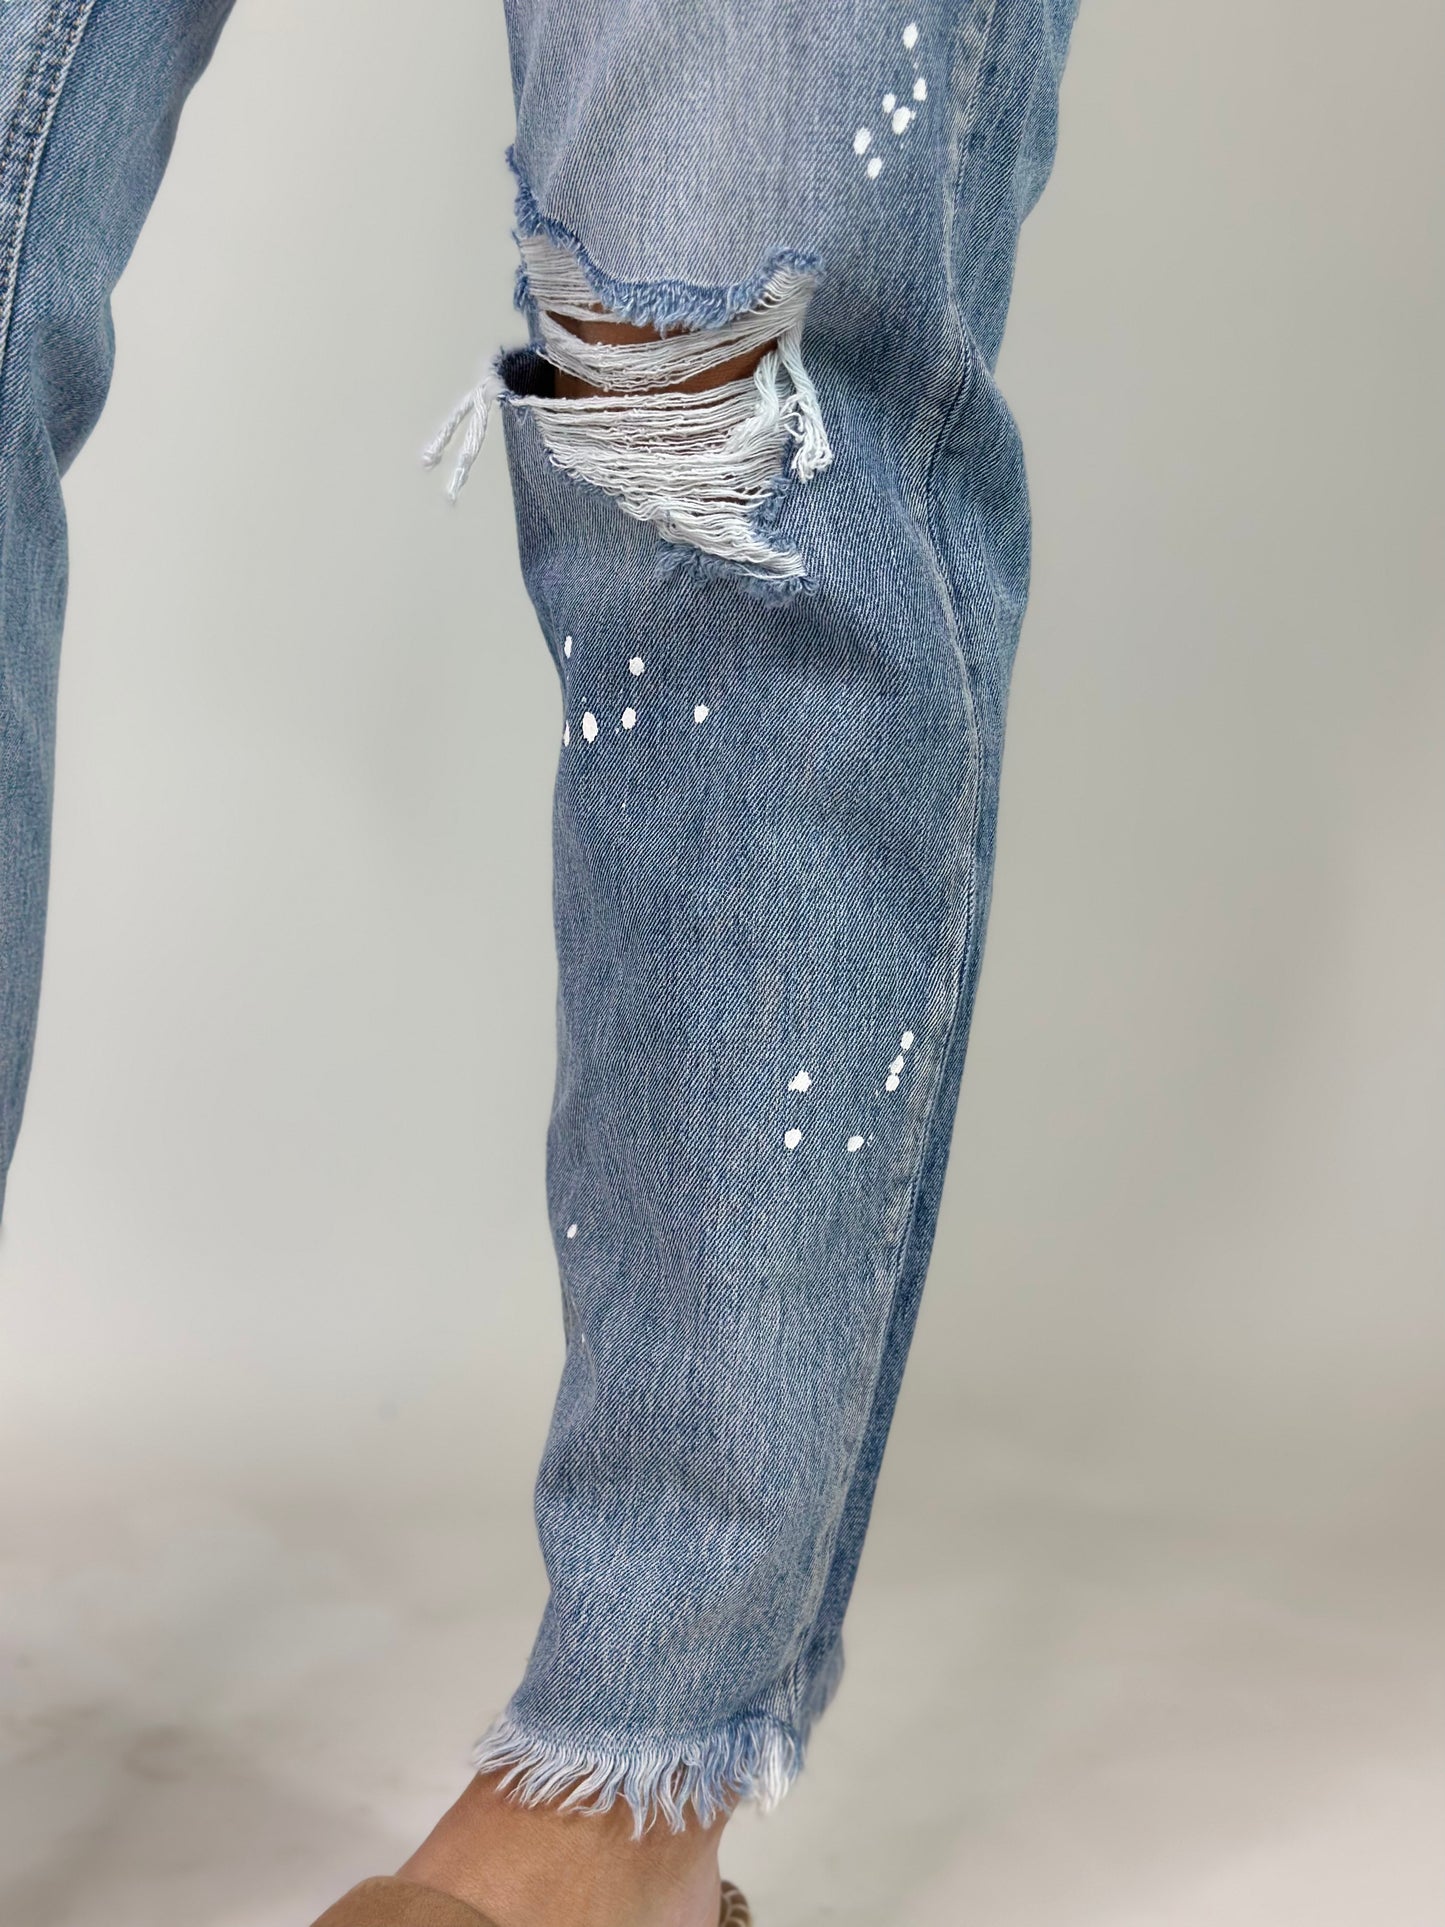 The Splatter Jeans